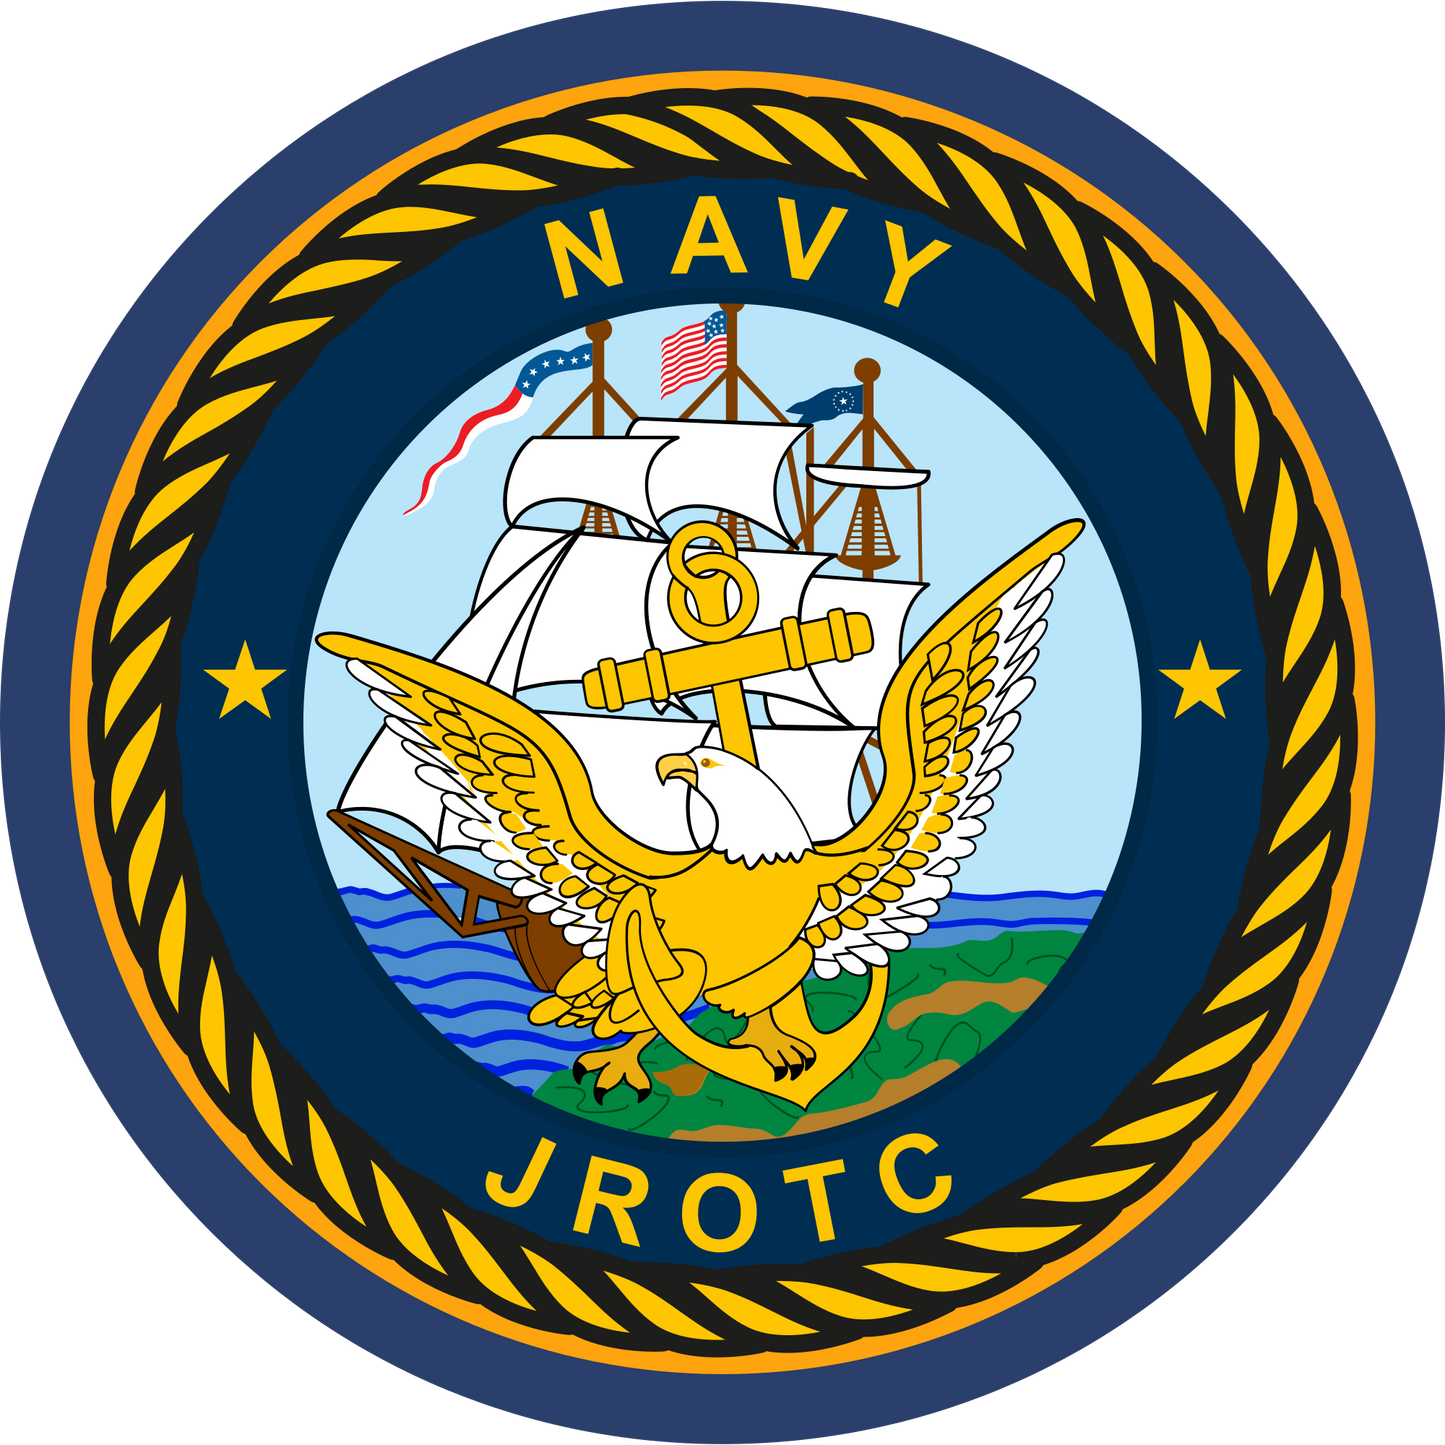 NVJROTC - Navy JROTC Sleeve Patch